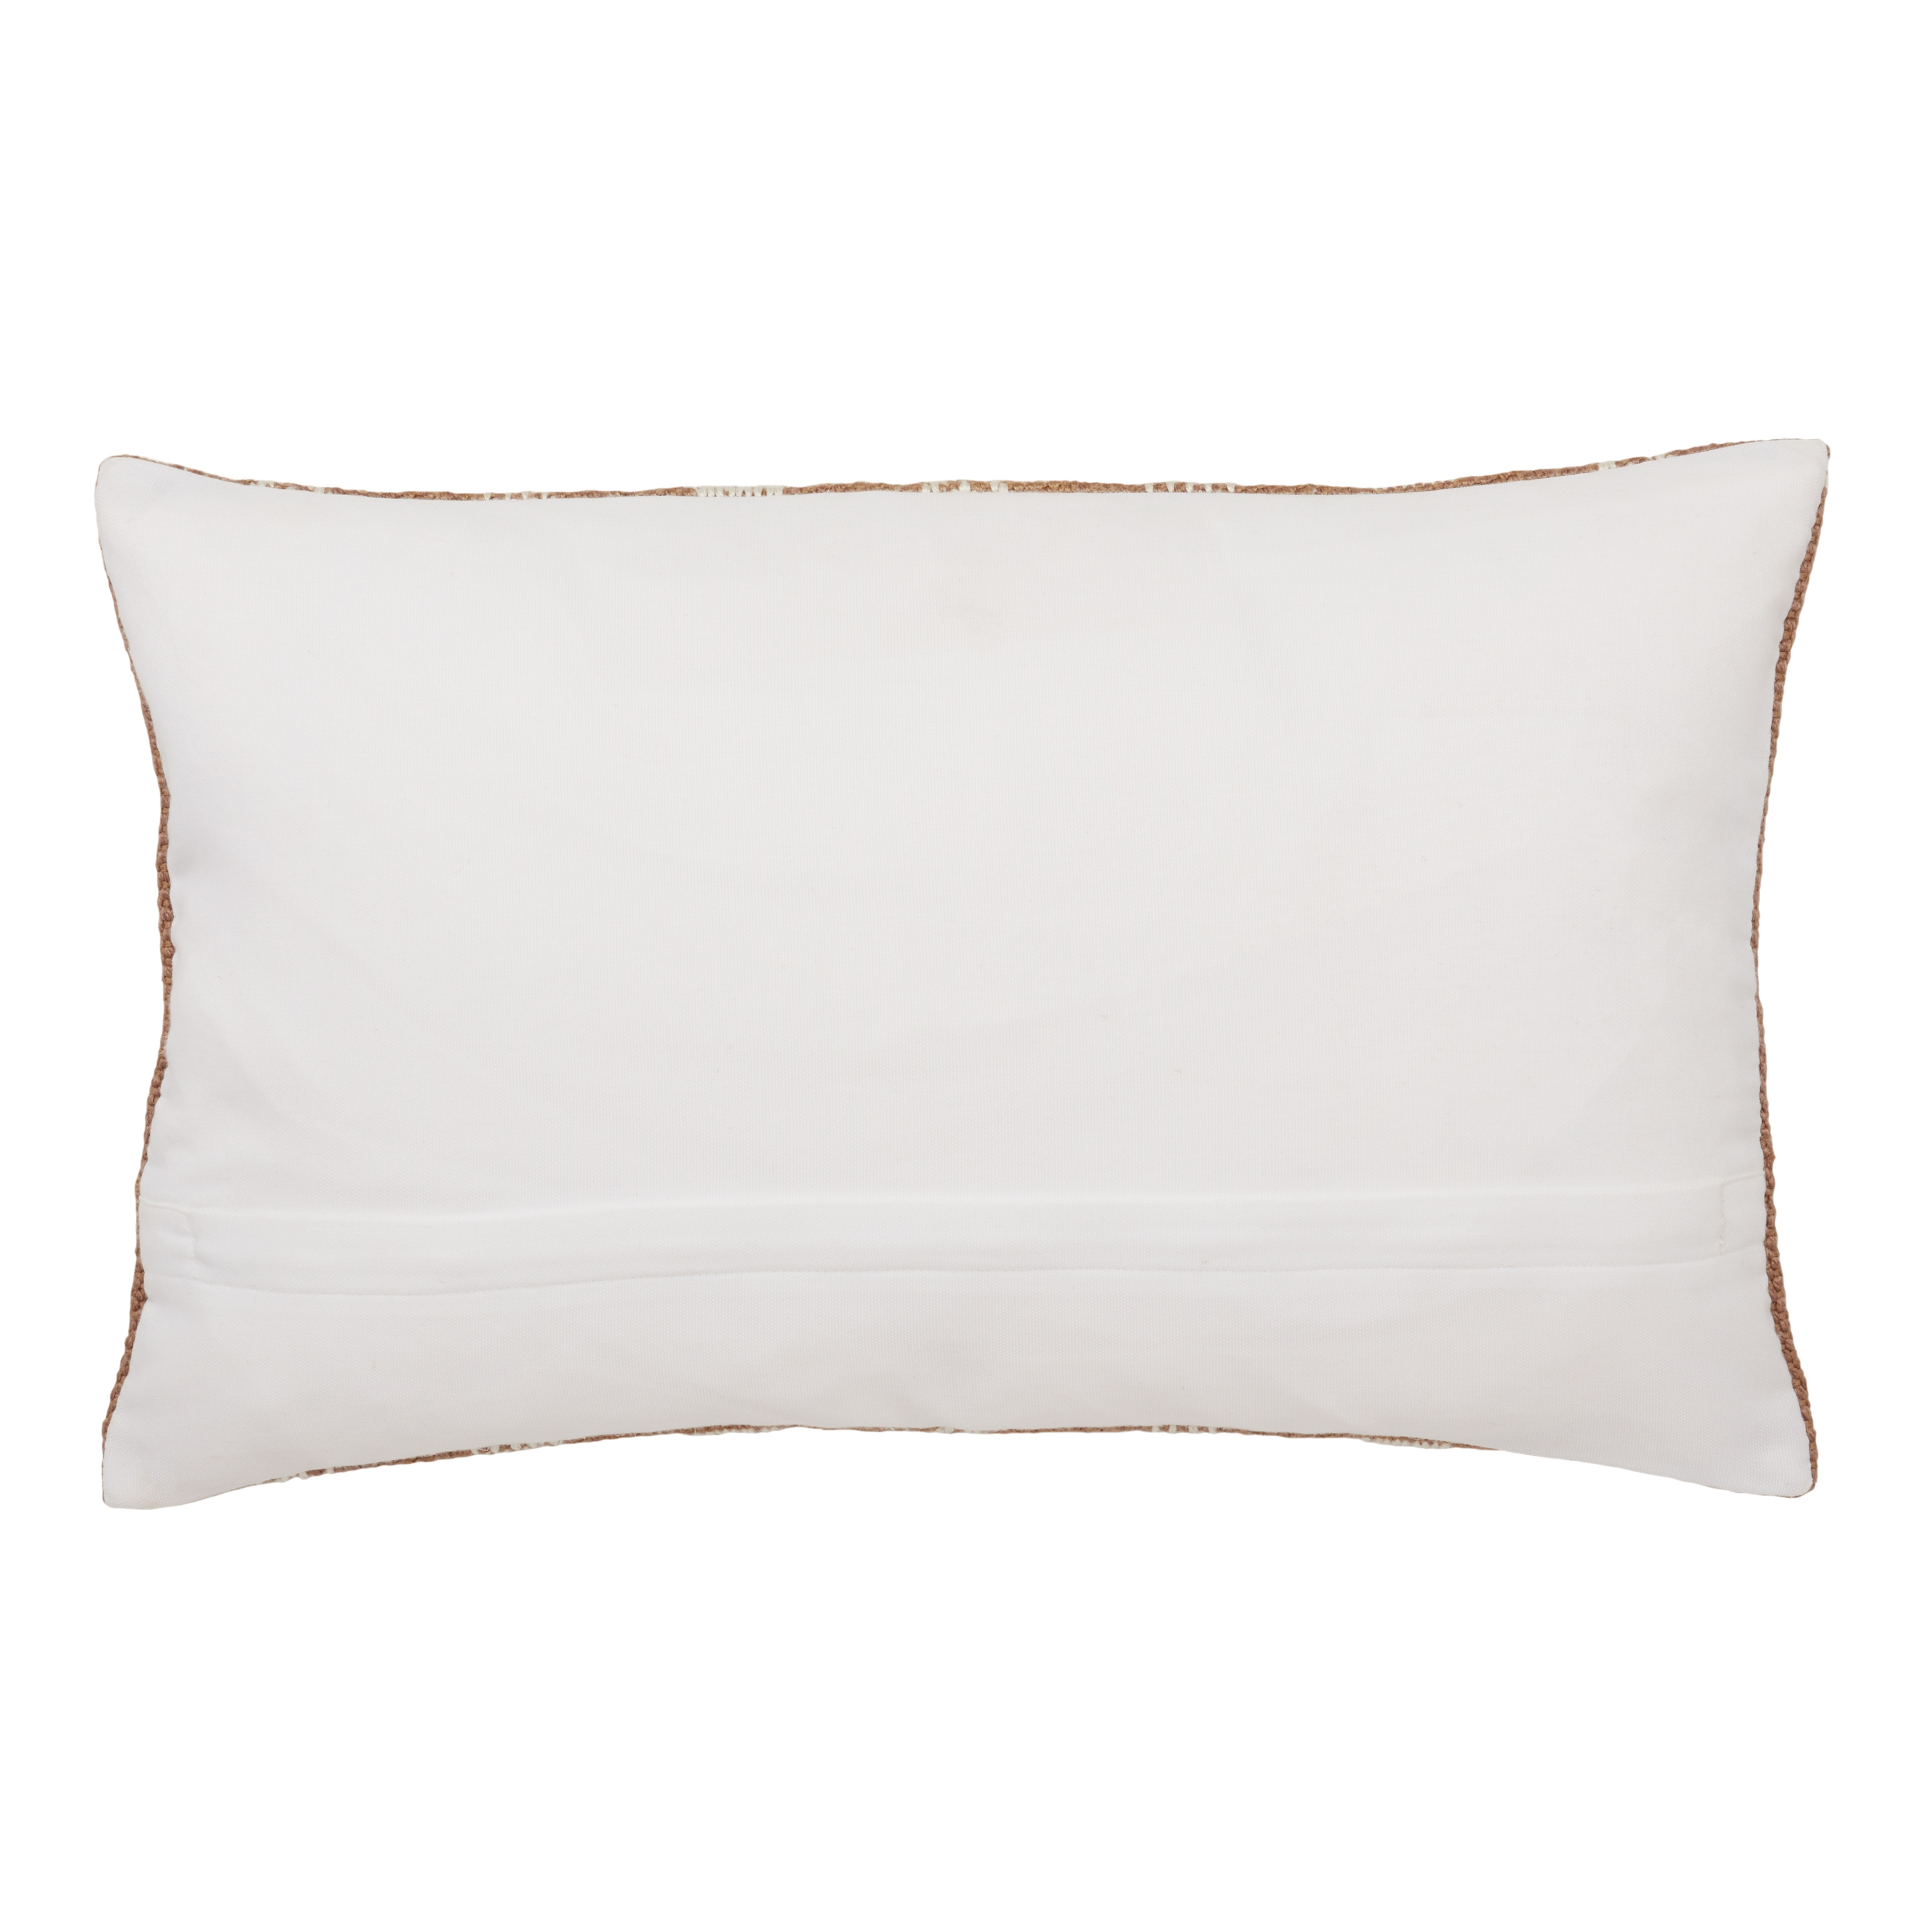 Papyrus Lumbar Pillow, Ginger, 21" x 13", Poly Insert - Image 2